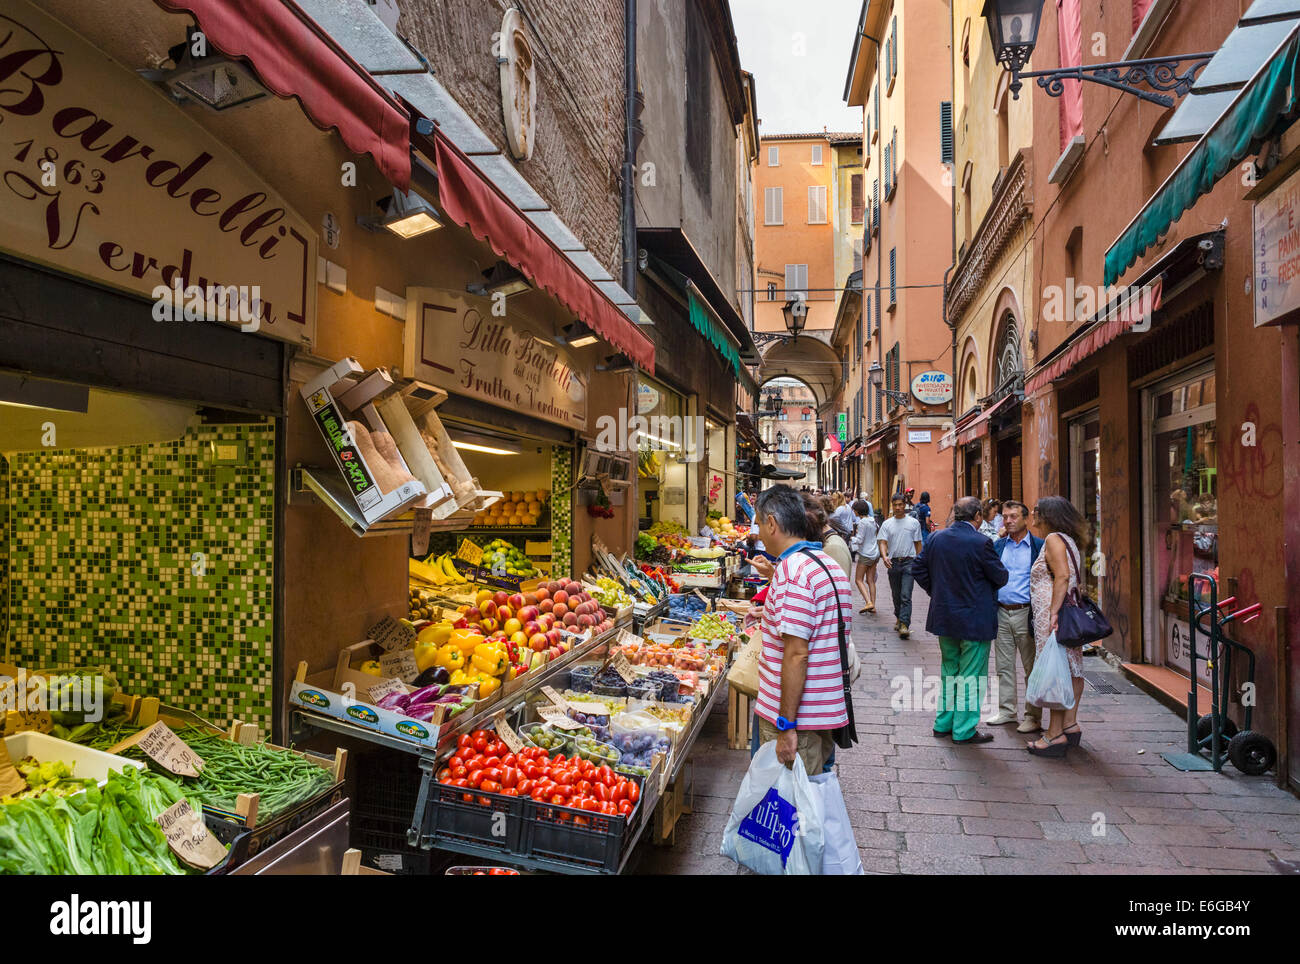 Producir puestos en la Via Pescherie Vecchie en el histórico distrito del mercado cuadrilátero, Bolonia, Emilia Romagna, Italia Foto de stock